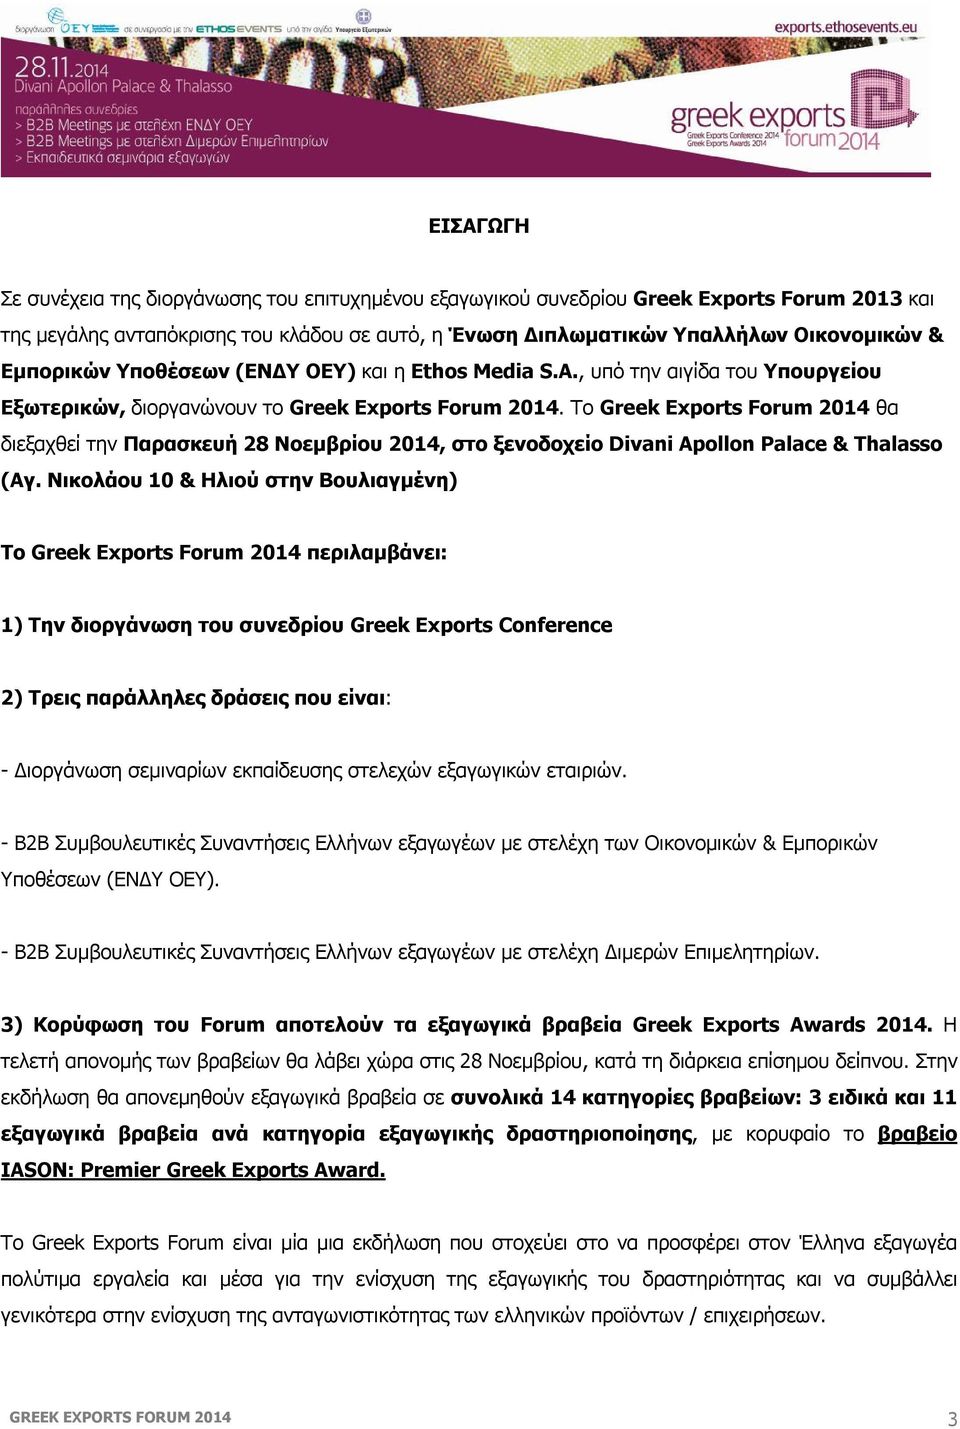 Το Greek Exports Forum 2014 θα διεξαχθεί την Παρασκευή 28 Νοεμβρίου 2014, στο ξενοδοχείο Divani Apollon Palace & Thalasso (Αγ.